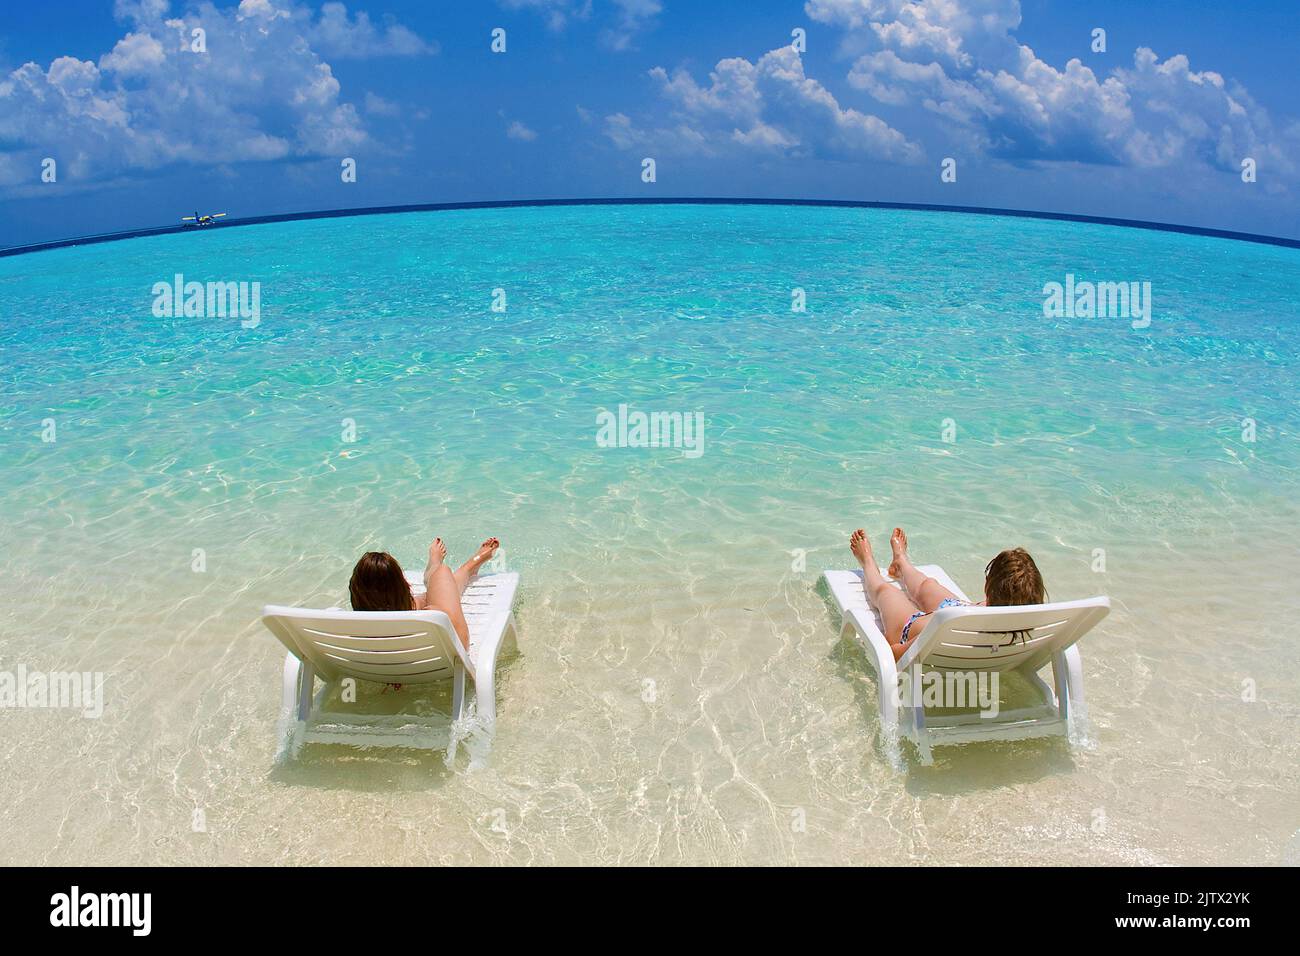 Vacanciers se détendant sur des chaises longues dans le lagon de l'île des maldives Biyadhoo, atoll sud-masculin, Maldives, océan Indien, Asie Banque D'Images